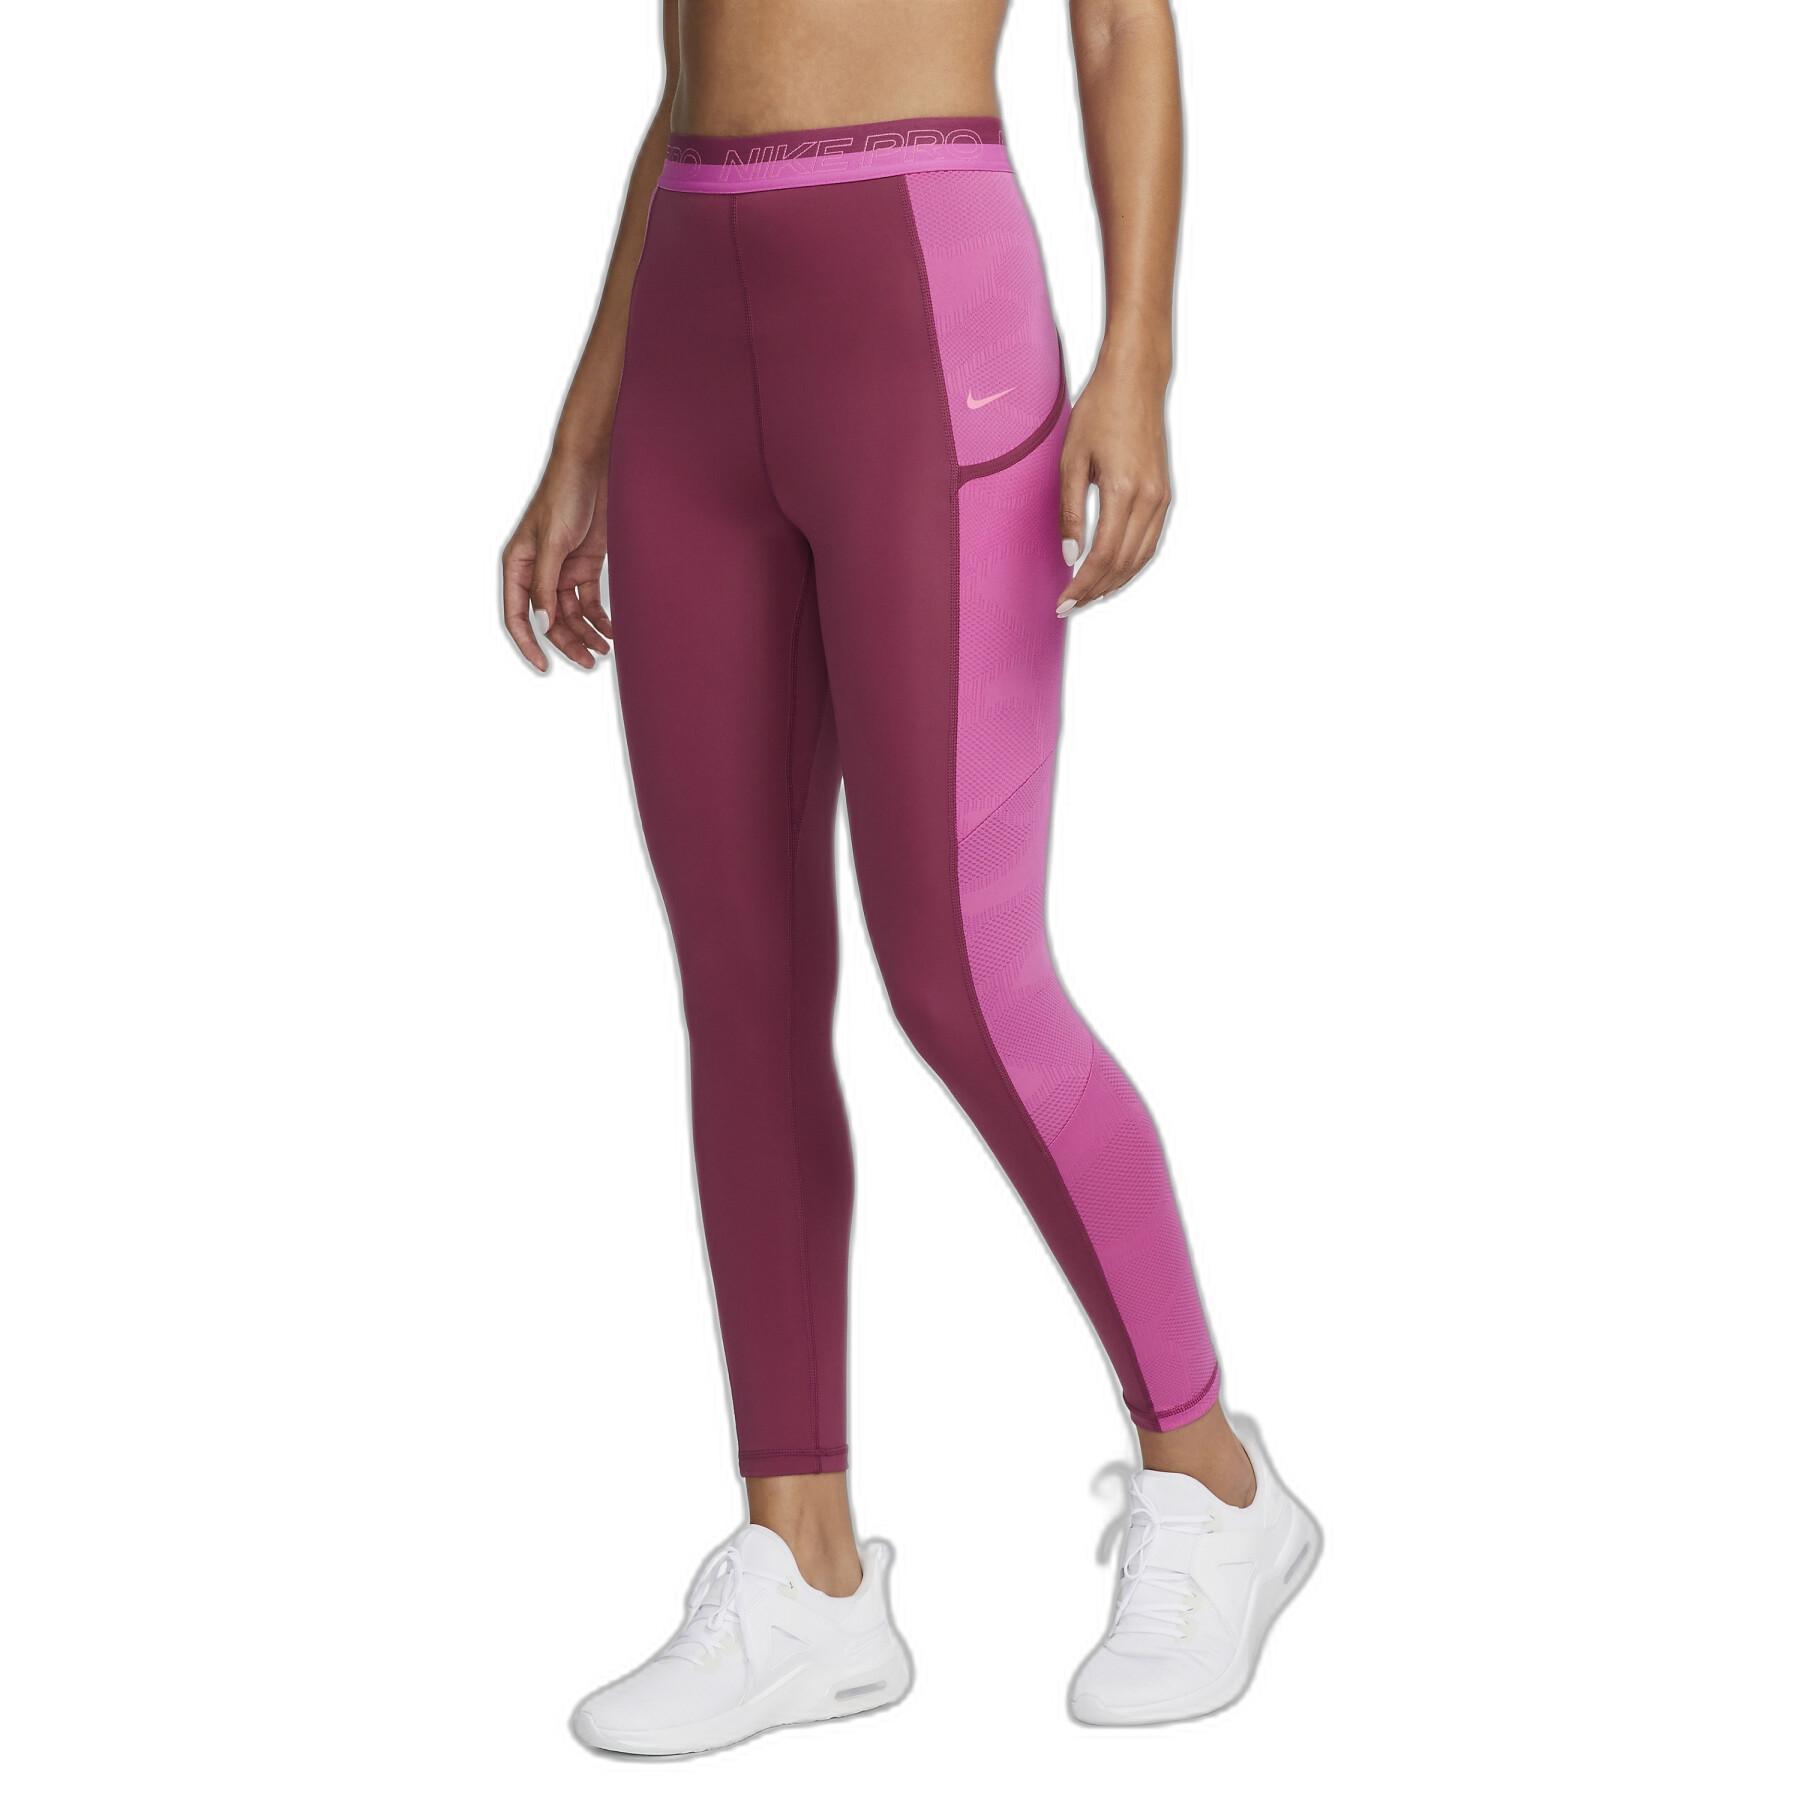 Women's Nike Pro XSmall Burgundy Tight Fit/Full Length Legging New